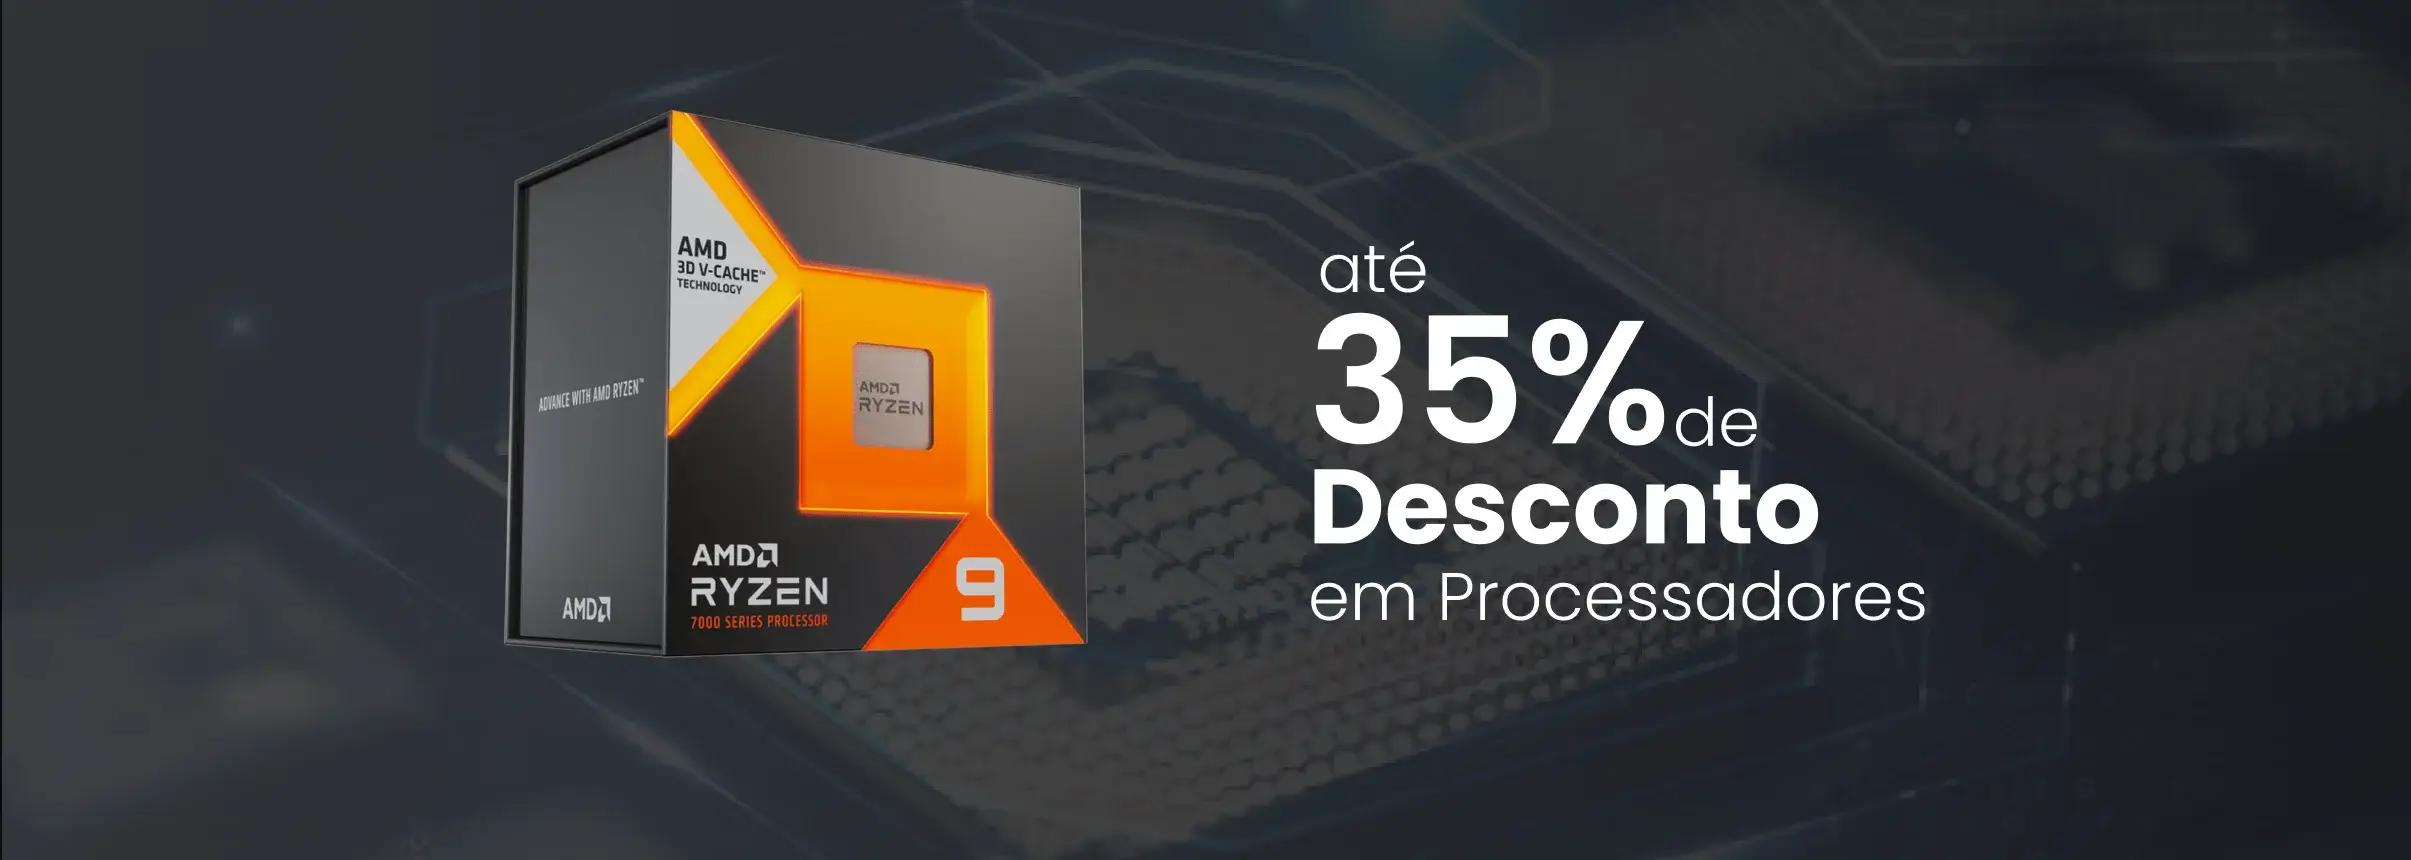 Até 35% de desconto em Processadores